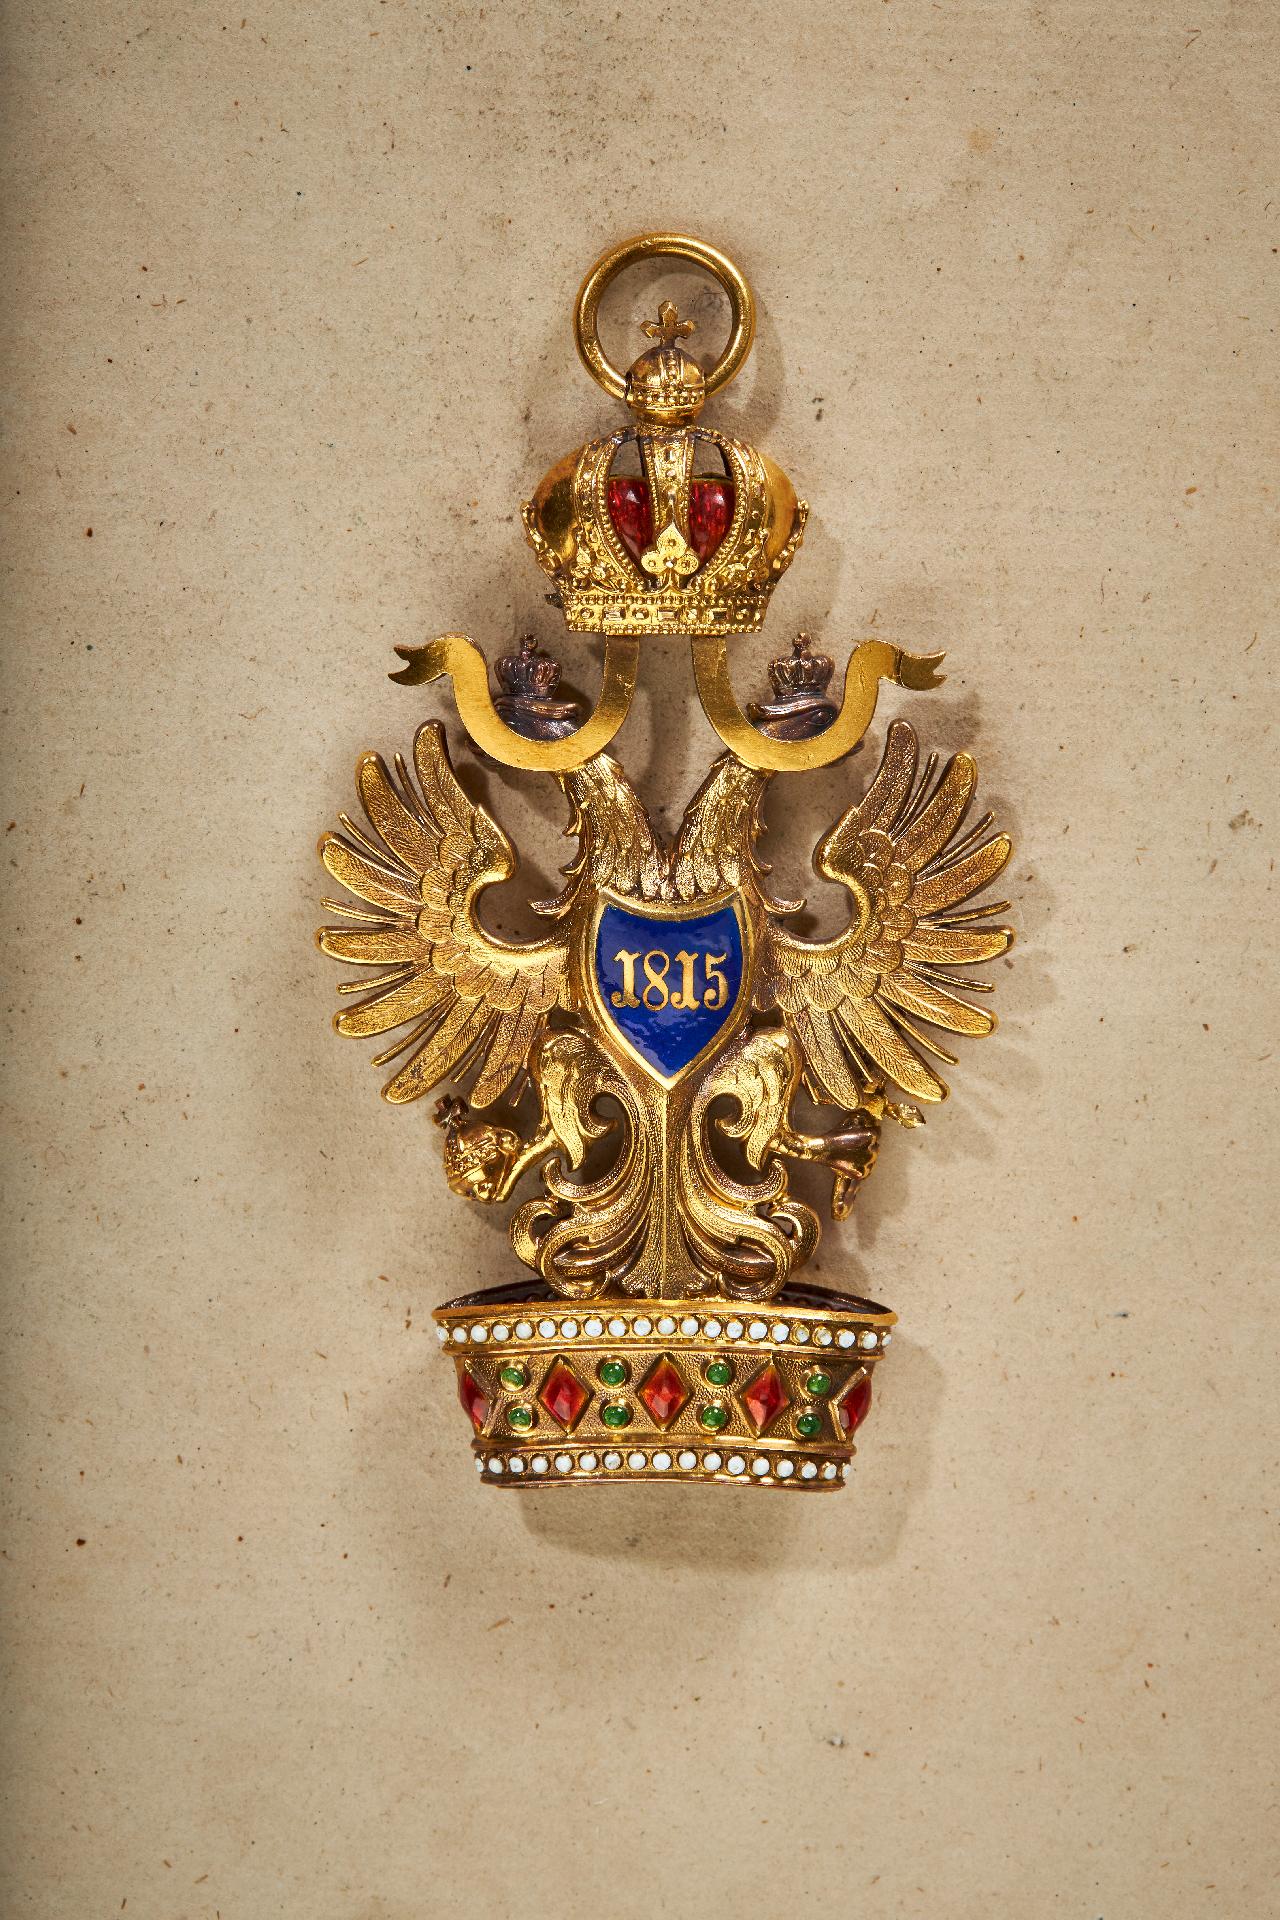 Österreich : Orden der Eisernen Krone - Ordenskollane in silbervergoldeter Ausführung aus der Ze... - Image 5 of 14